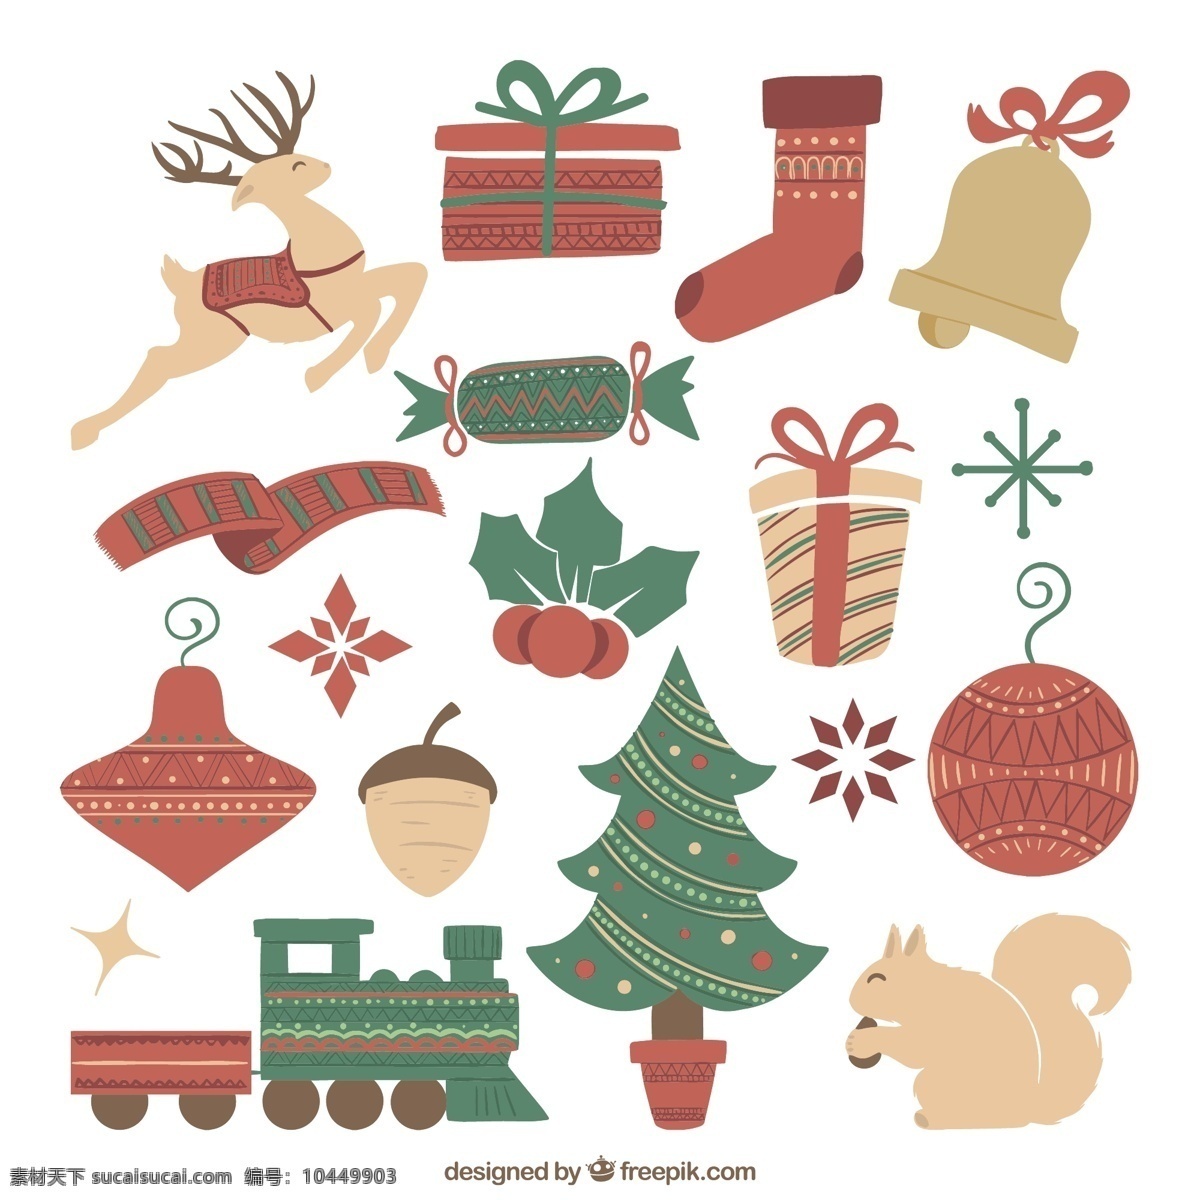 可爱 圣诞 元素 插图 圣诞树 一方面 礼品 圣诞快乐 冬天 手绘 快乐 庆祝 可爱的节日 目前 绘图 驯鹿 节日快乐 说明 贝尔 白色